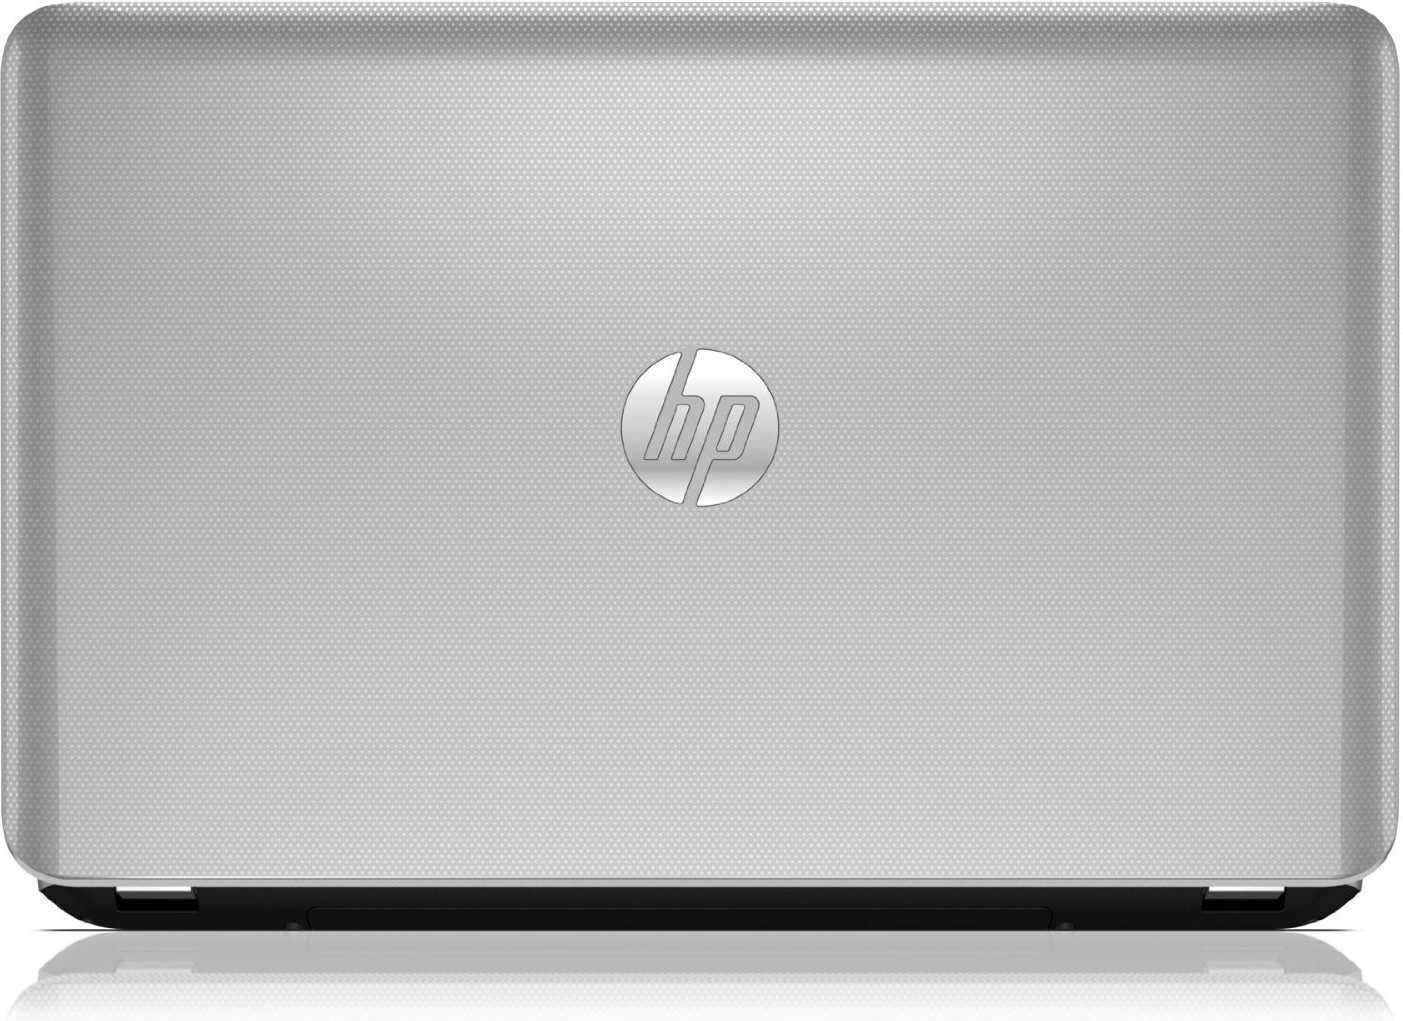 Ноутбук HP Pavilion 15-e076sr (D9V98EA) - подробные характеристики обзоры видео фото Цены в интернет-магазинах где можно купить ноутбук HP Pavilion 15-e076sr (D9V98EA)